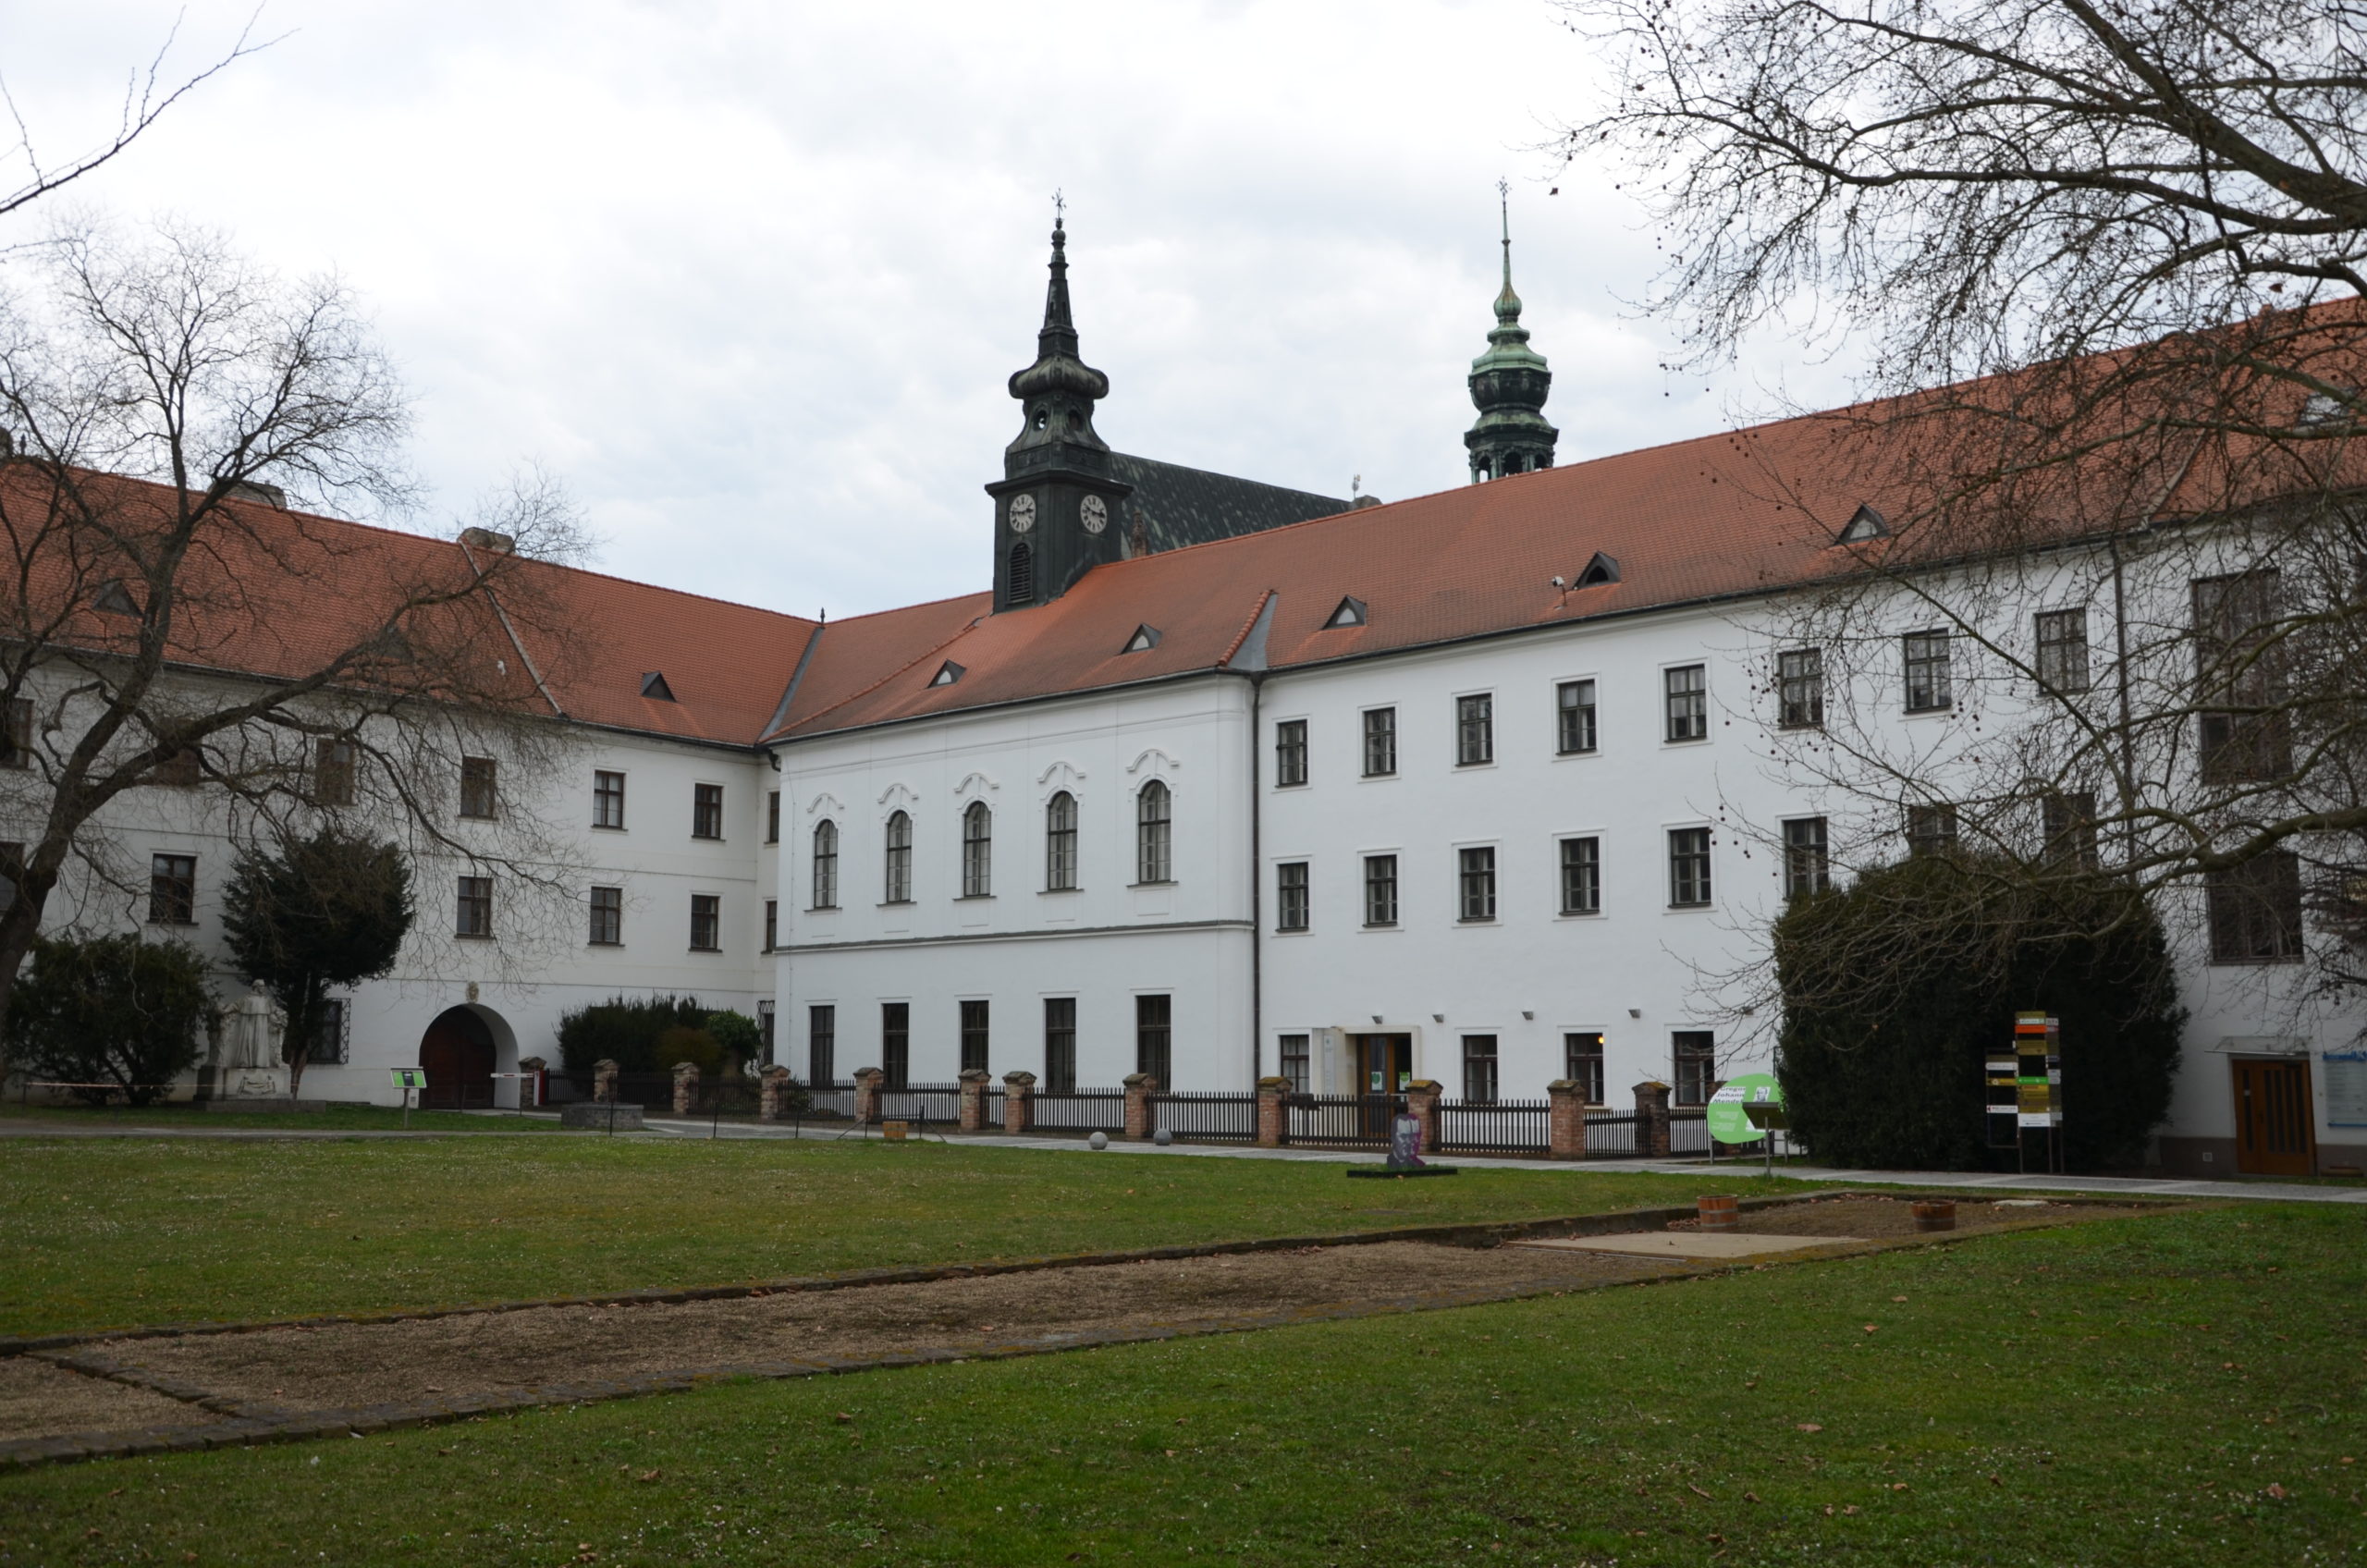 Foto: Altbrünner Kloster am Mendel-Platz